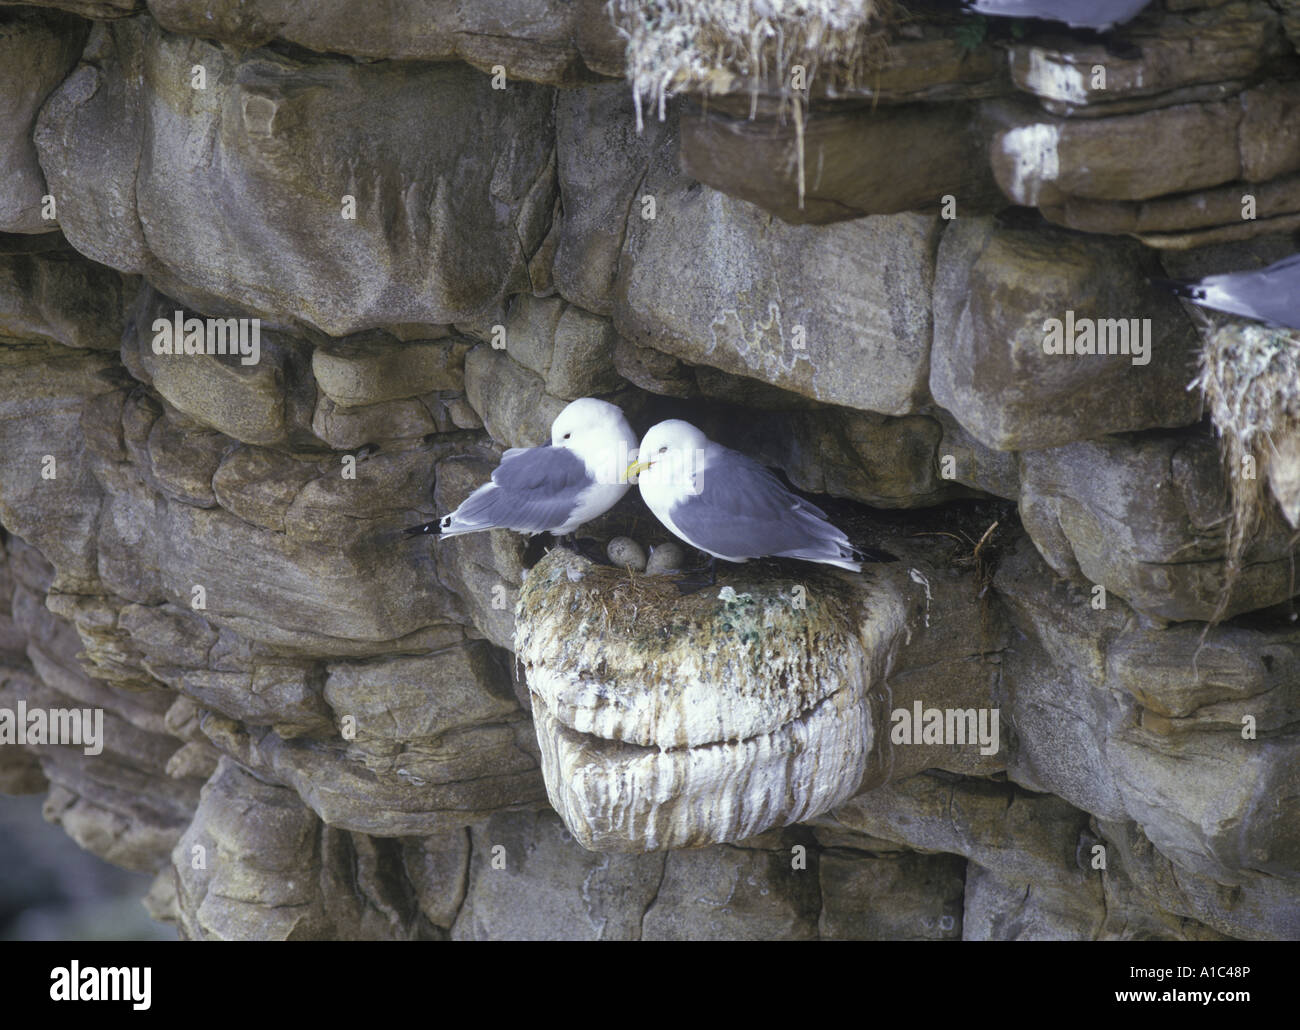 Kittiwake Rissa Tridactyla Nahaufnahme von zwei am Nest Ei im nest Stockfoto